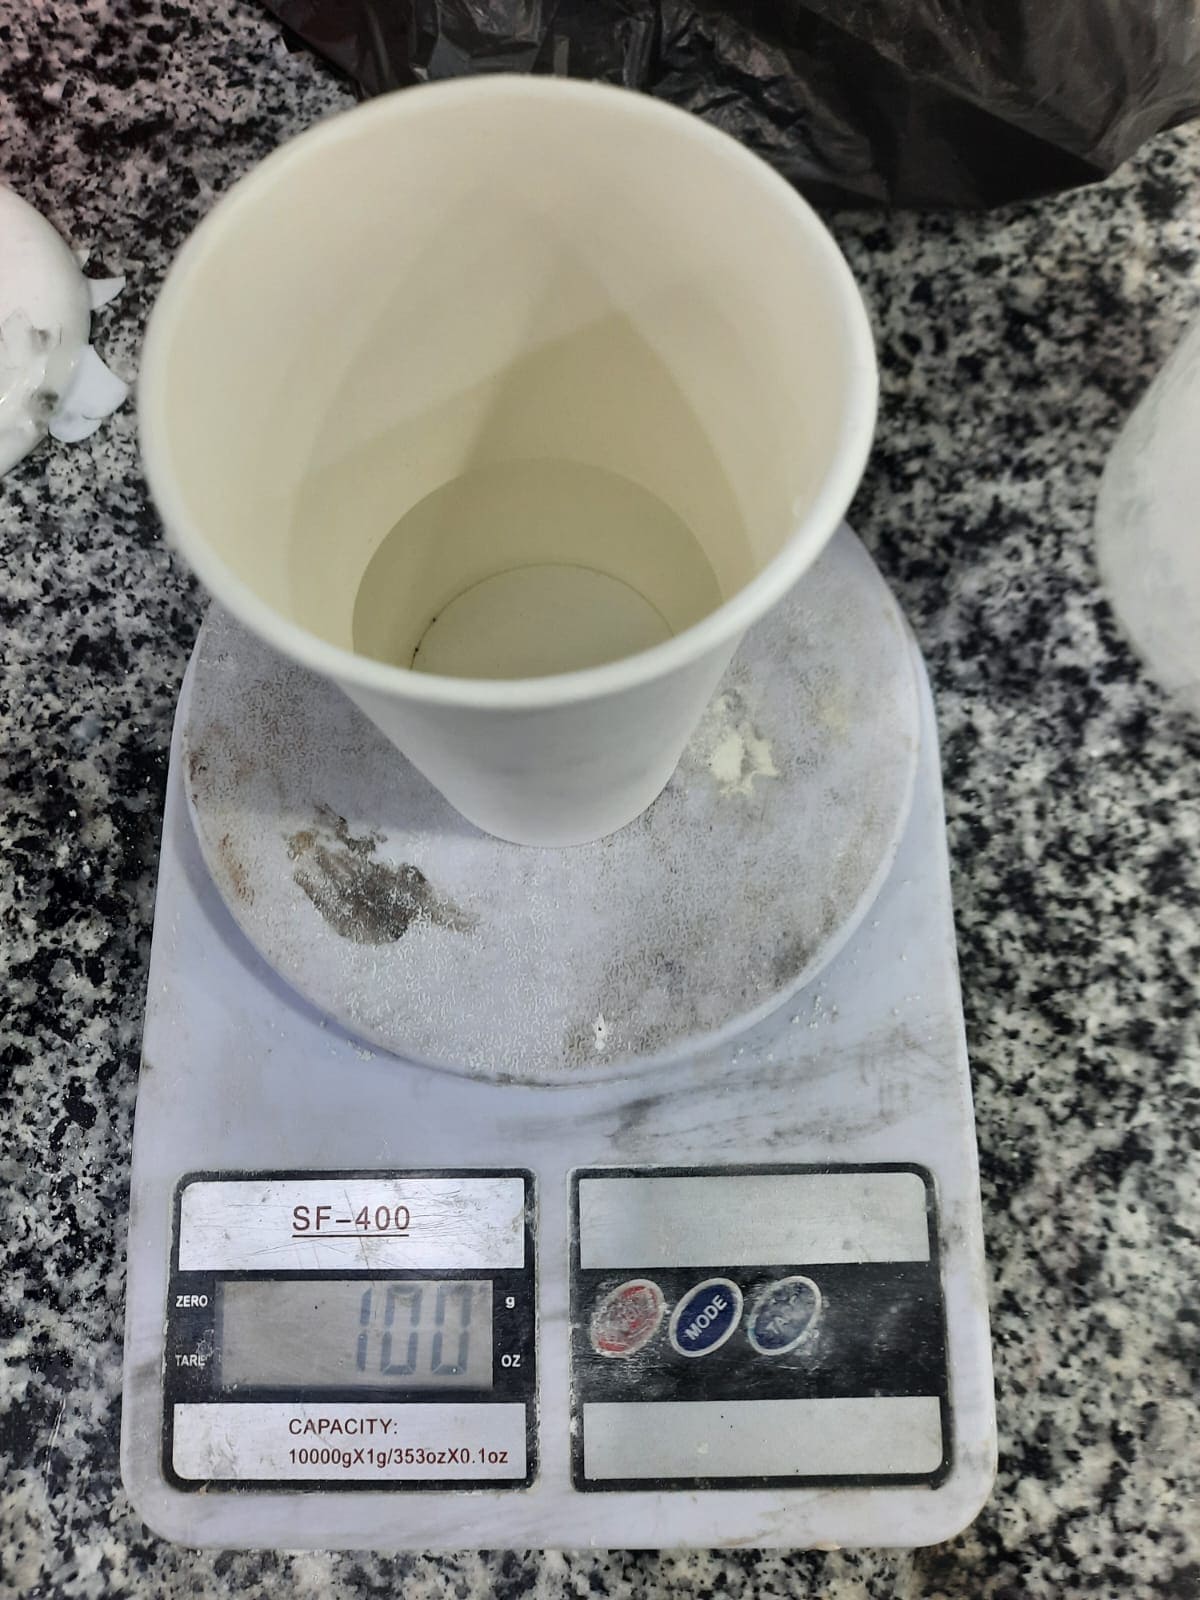 Measuring water